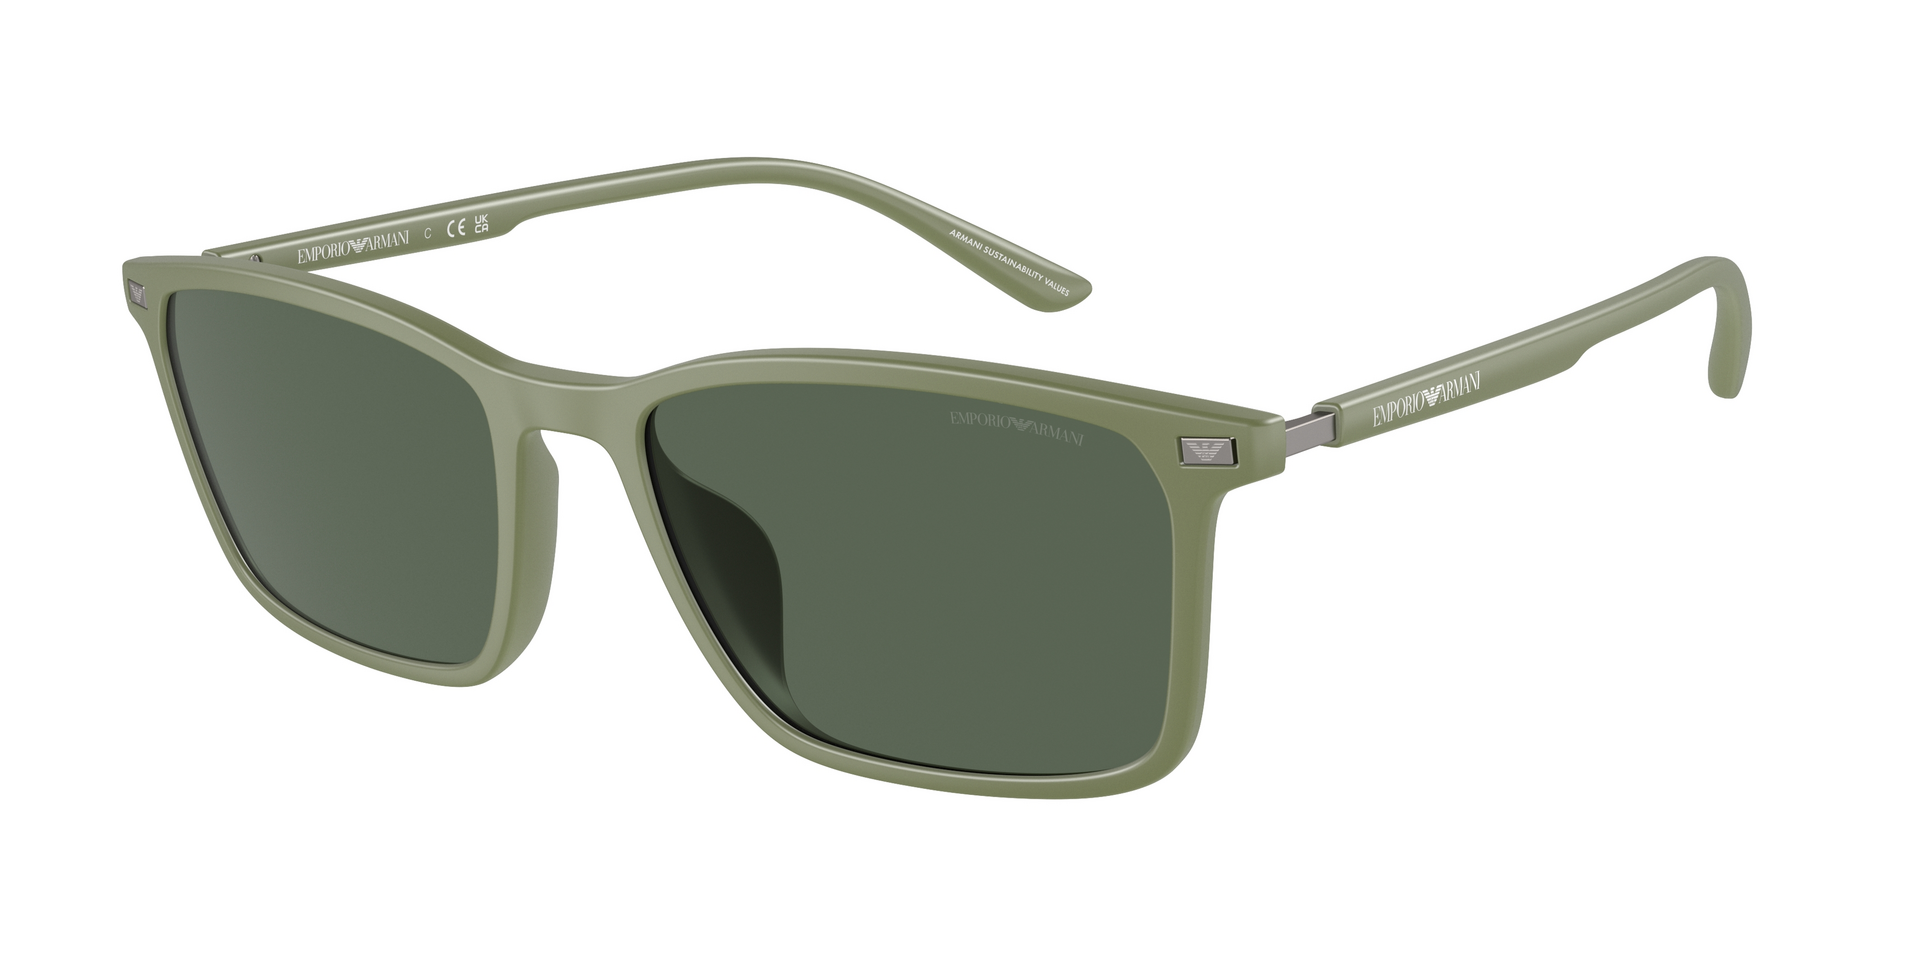 Das Bild zeigt die Sonnenbrille EA4223 542471 von der Marke Emporio Armani in grün.